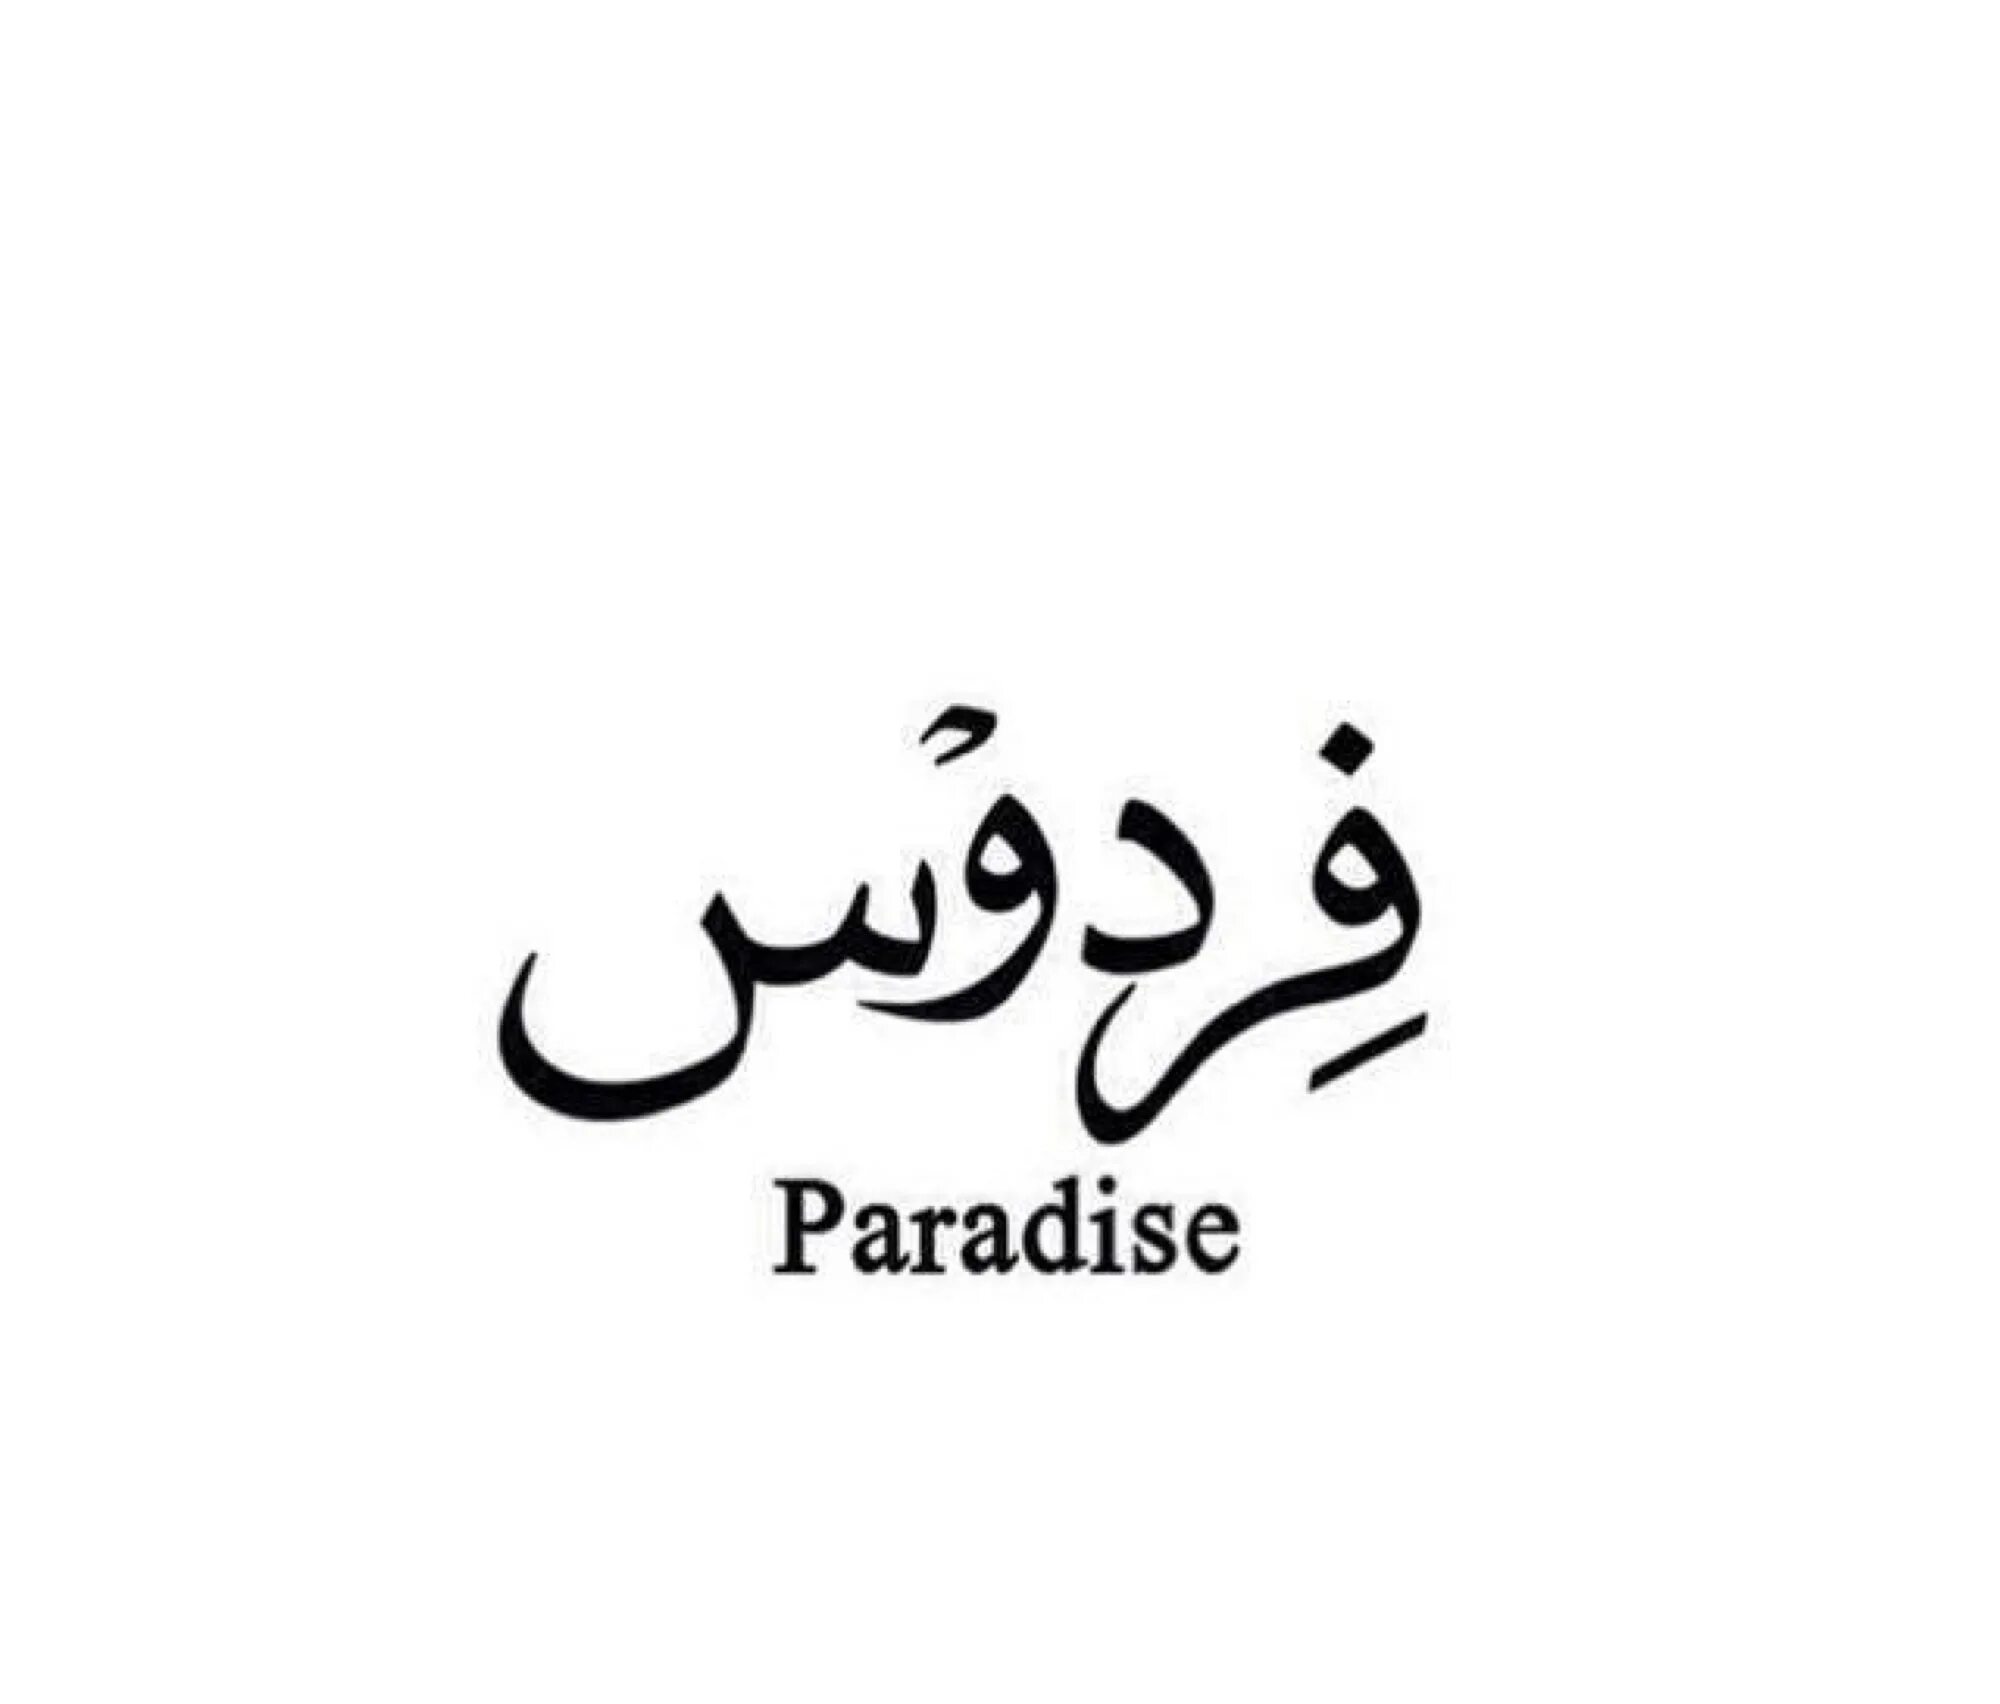 Слава на арабском. Надписи на арабском языке. Тату на арабском языке. Красивые надписи на арабском. Любовь на арабском языке.